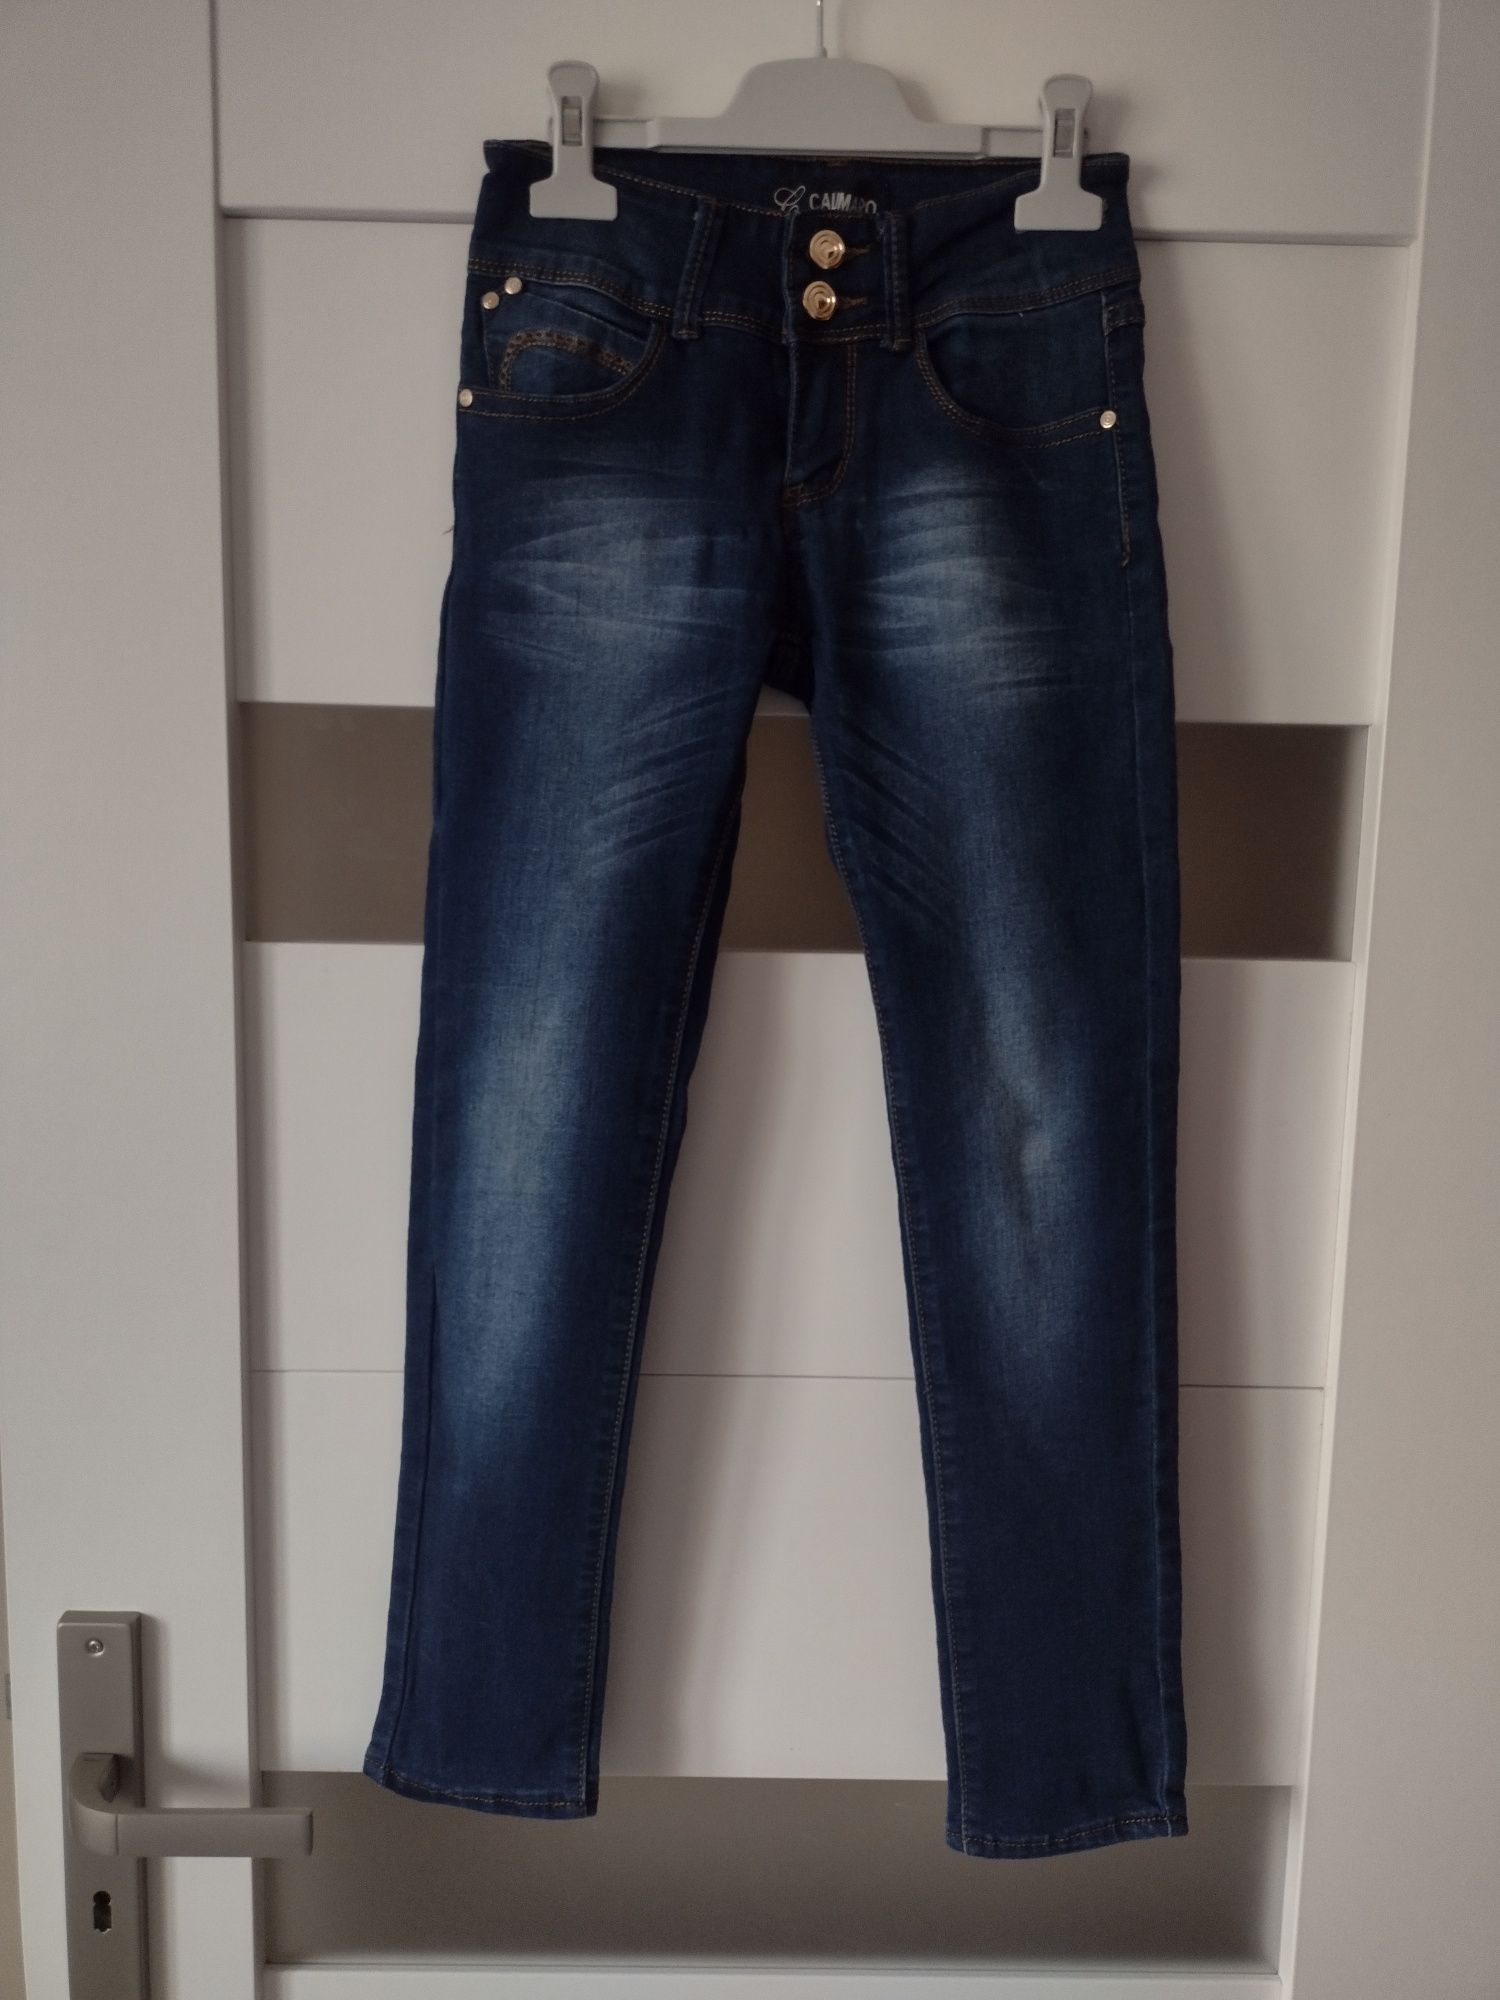 Calimaro fajne spodnie jeansowe dla dziewczynki rozmiar 140